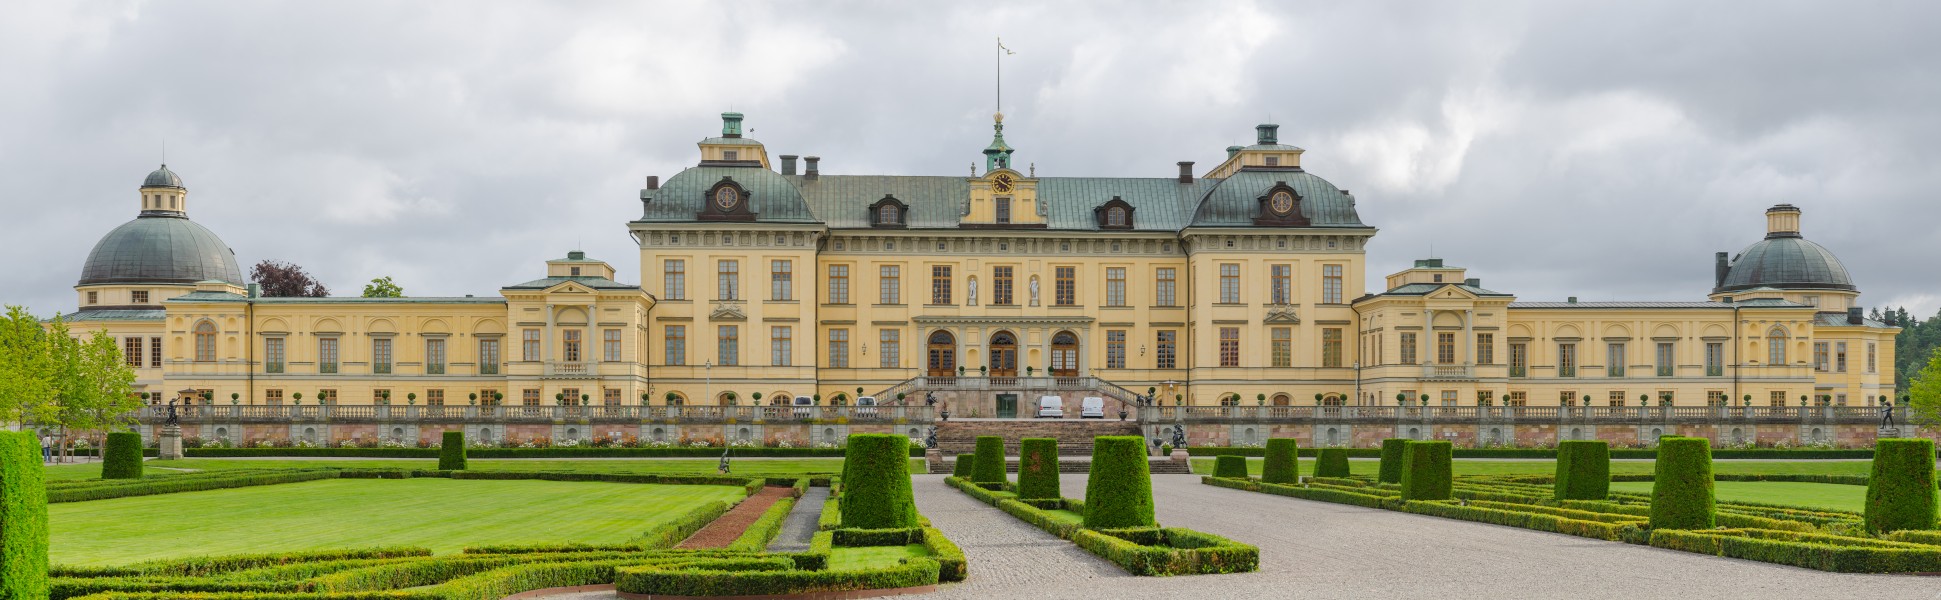 Drottningholm palace August 2012